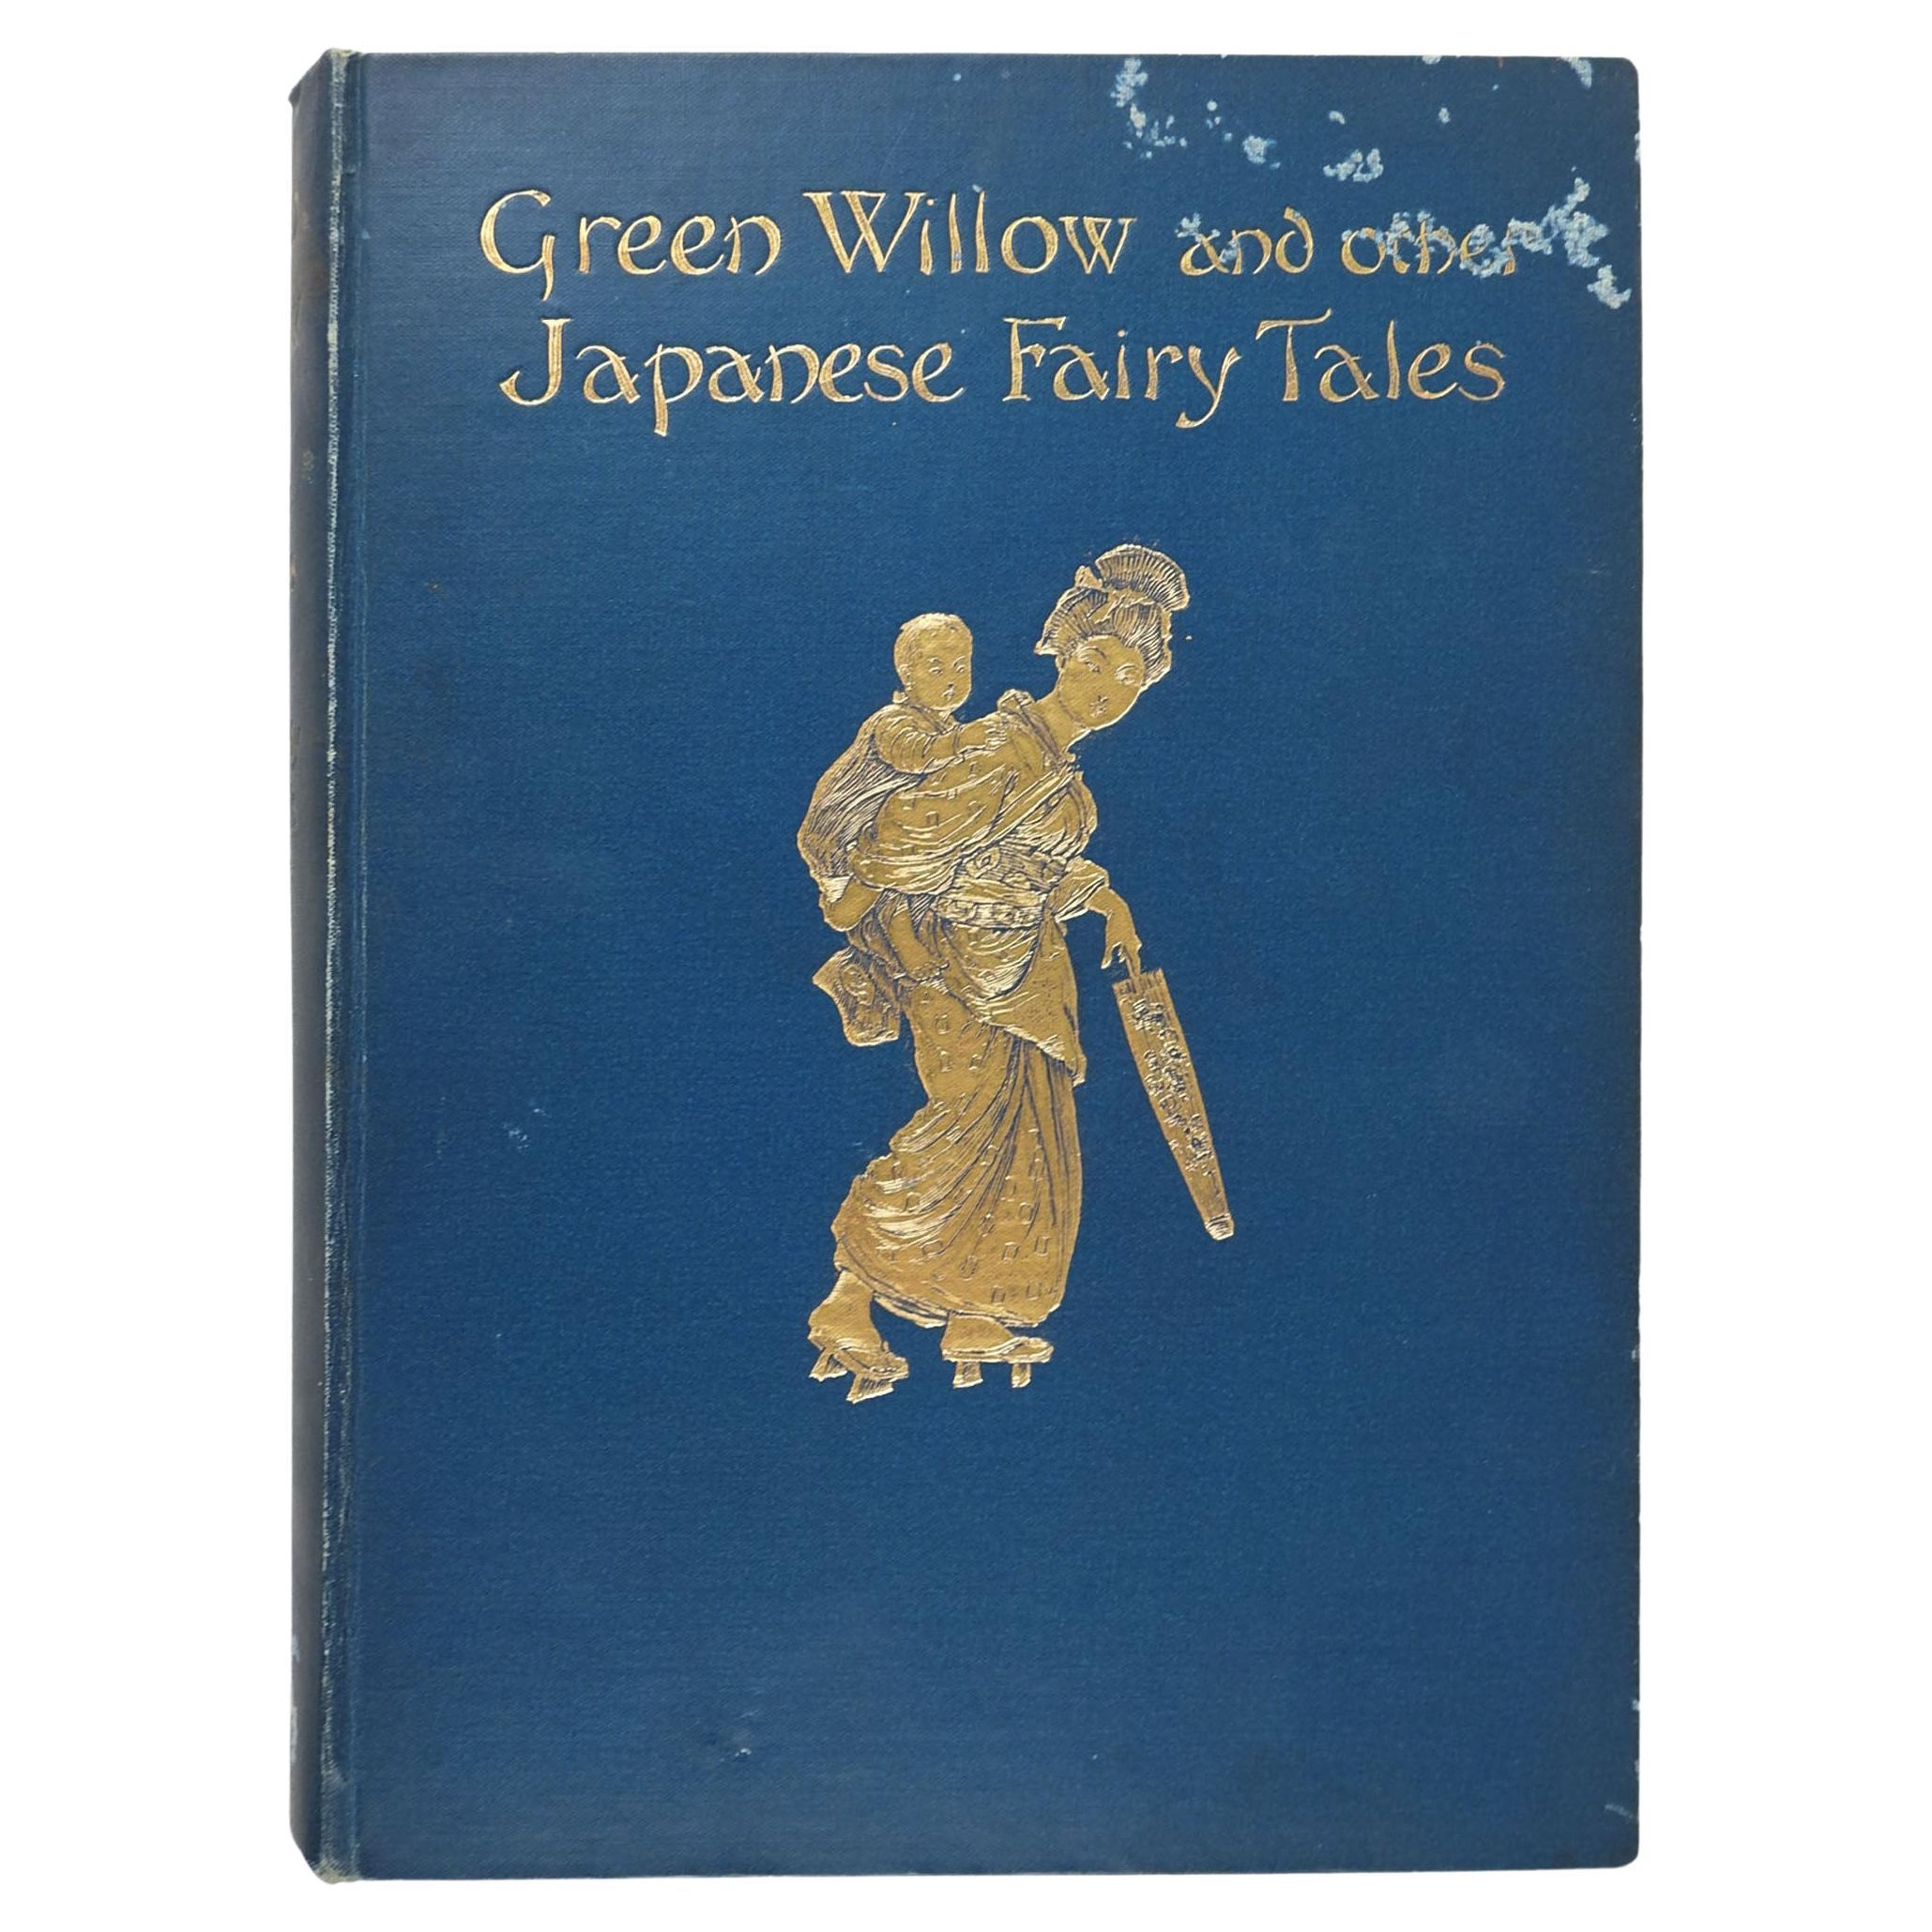 Antikes japanisches Märchenbuch aus grüner Weide und anderen japanischen Märchen, 1910